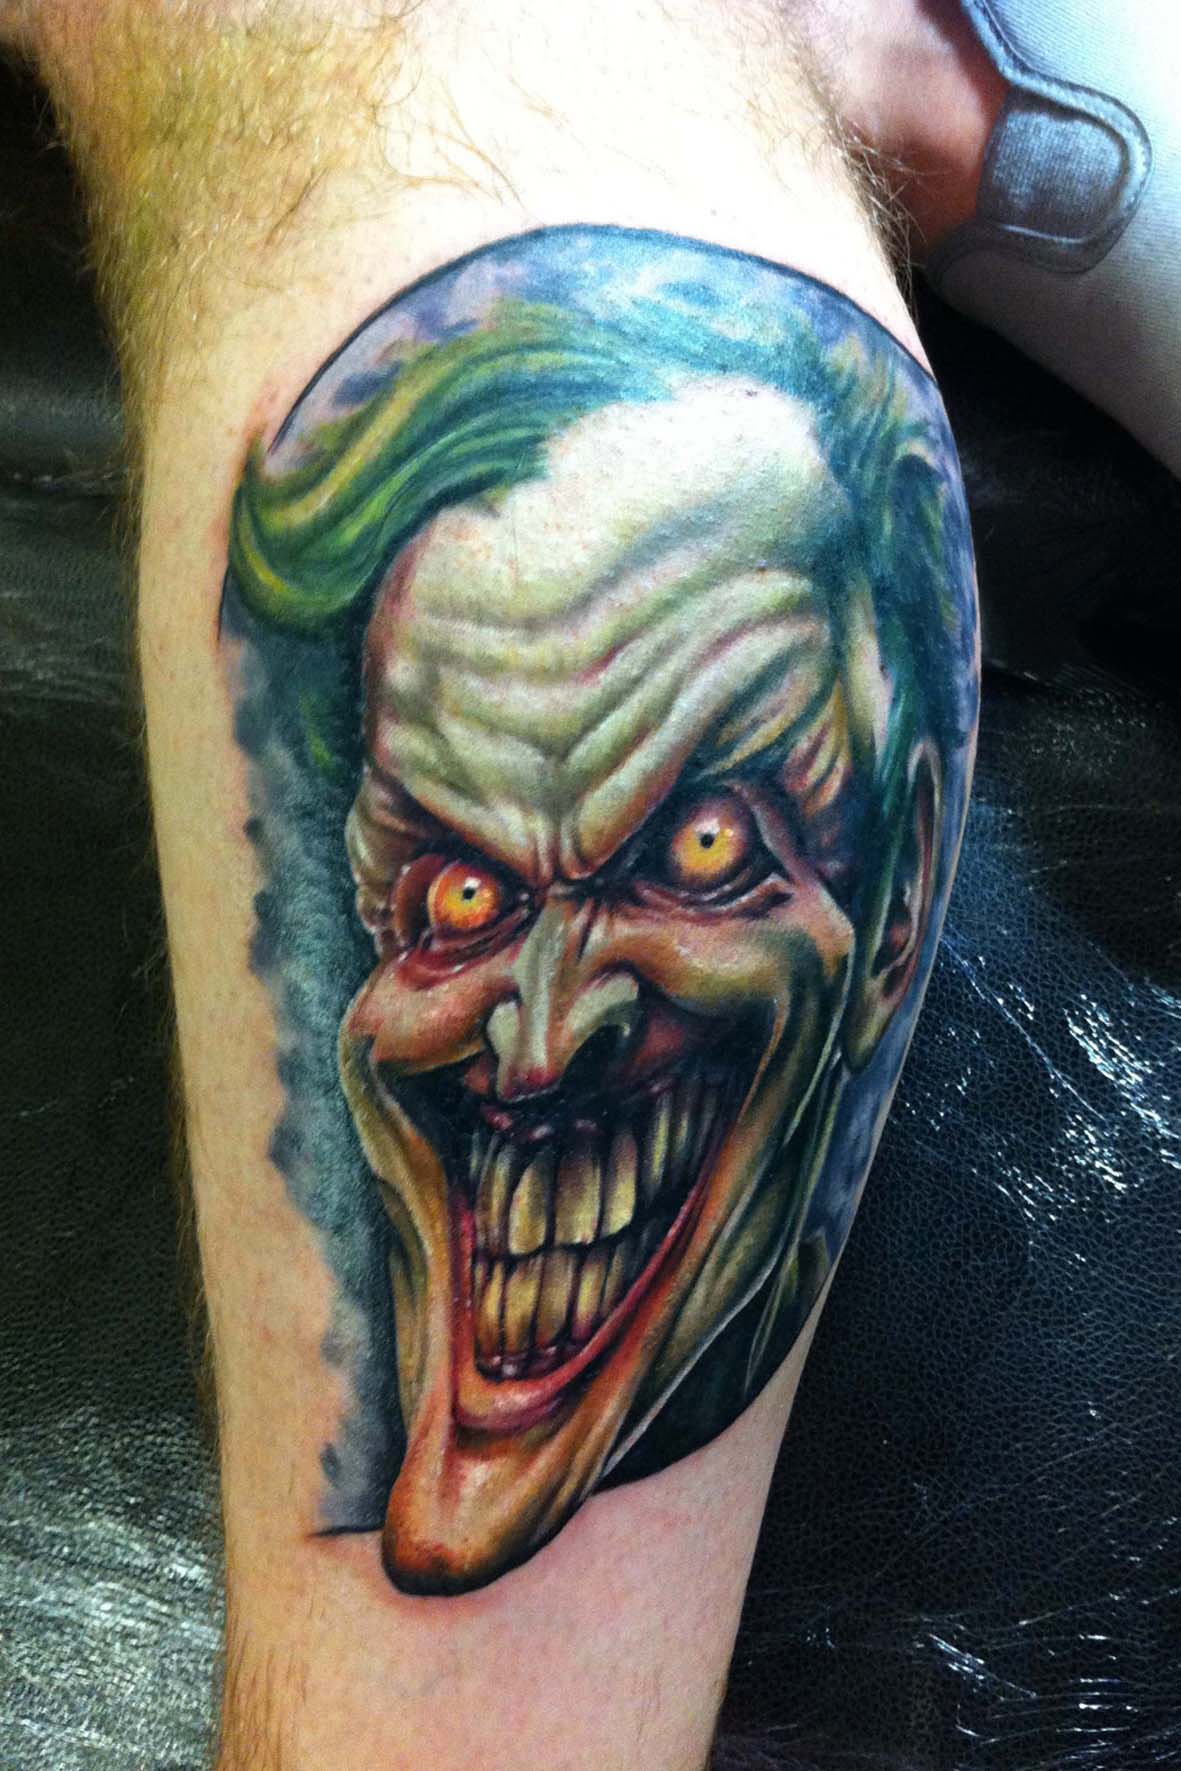 Horror Joker Tattoo Design For Leg Calf